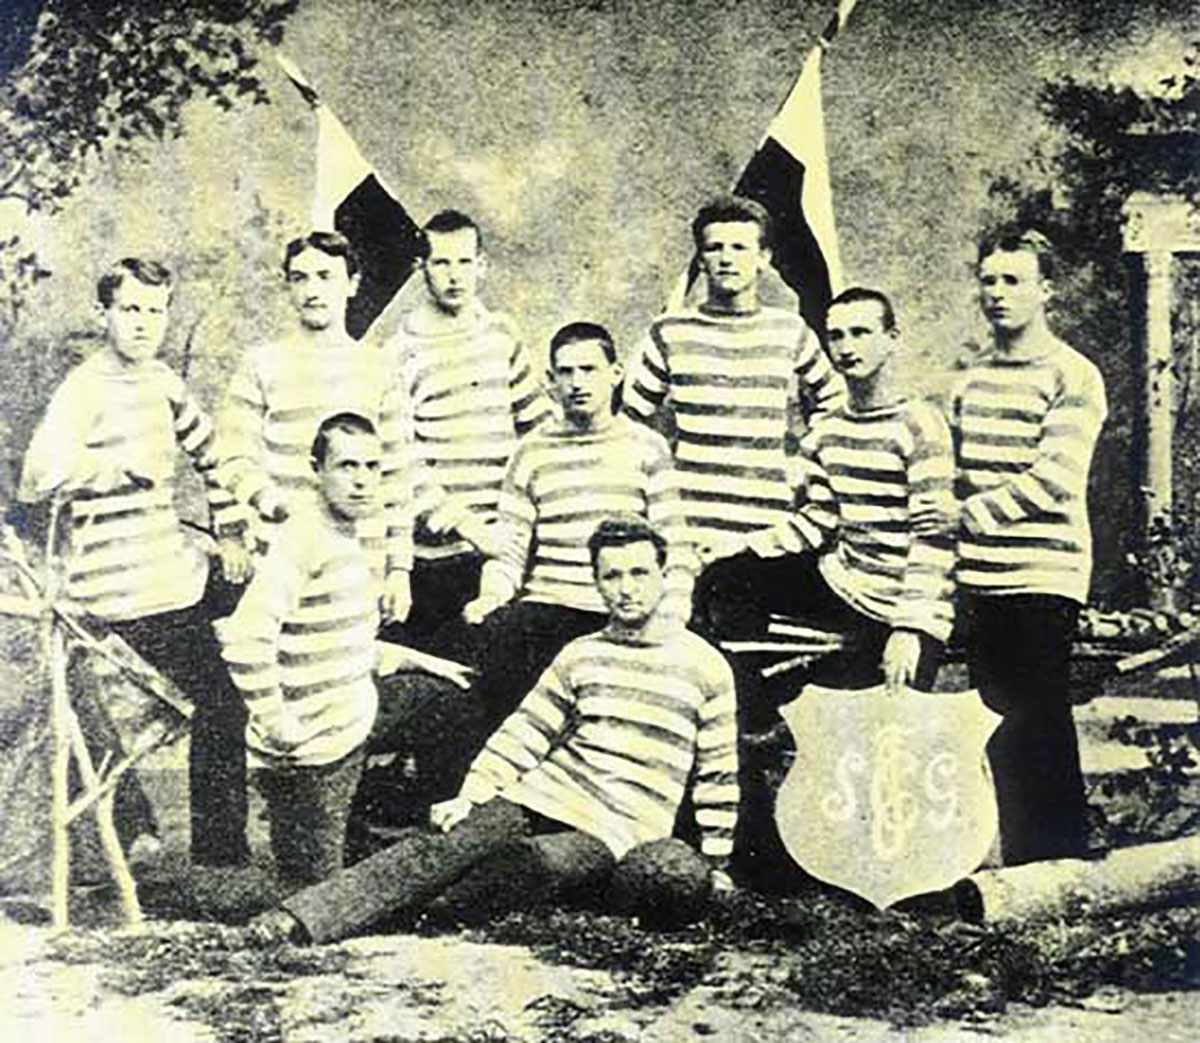 Foto antigua de un equipo de fútbol